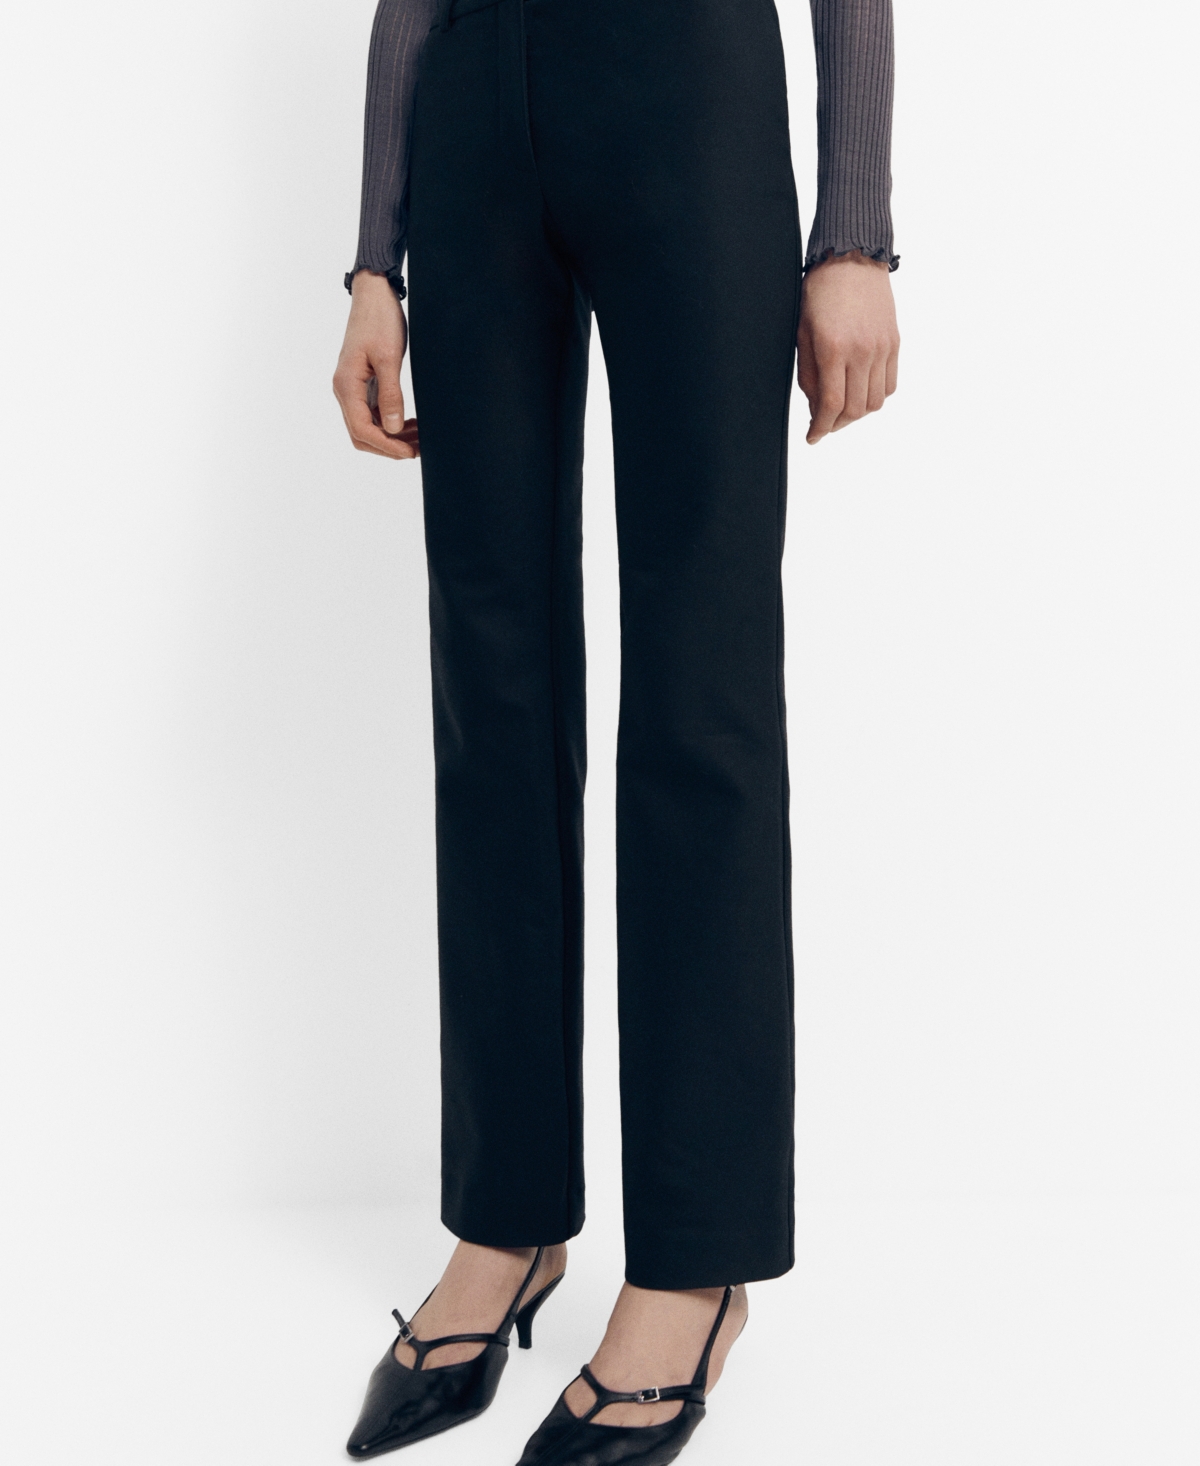 Women's Side Slit Suit Pants - Black